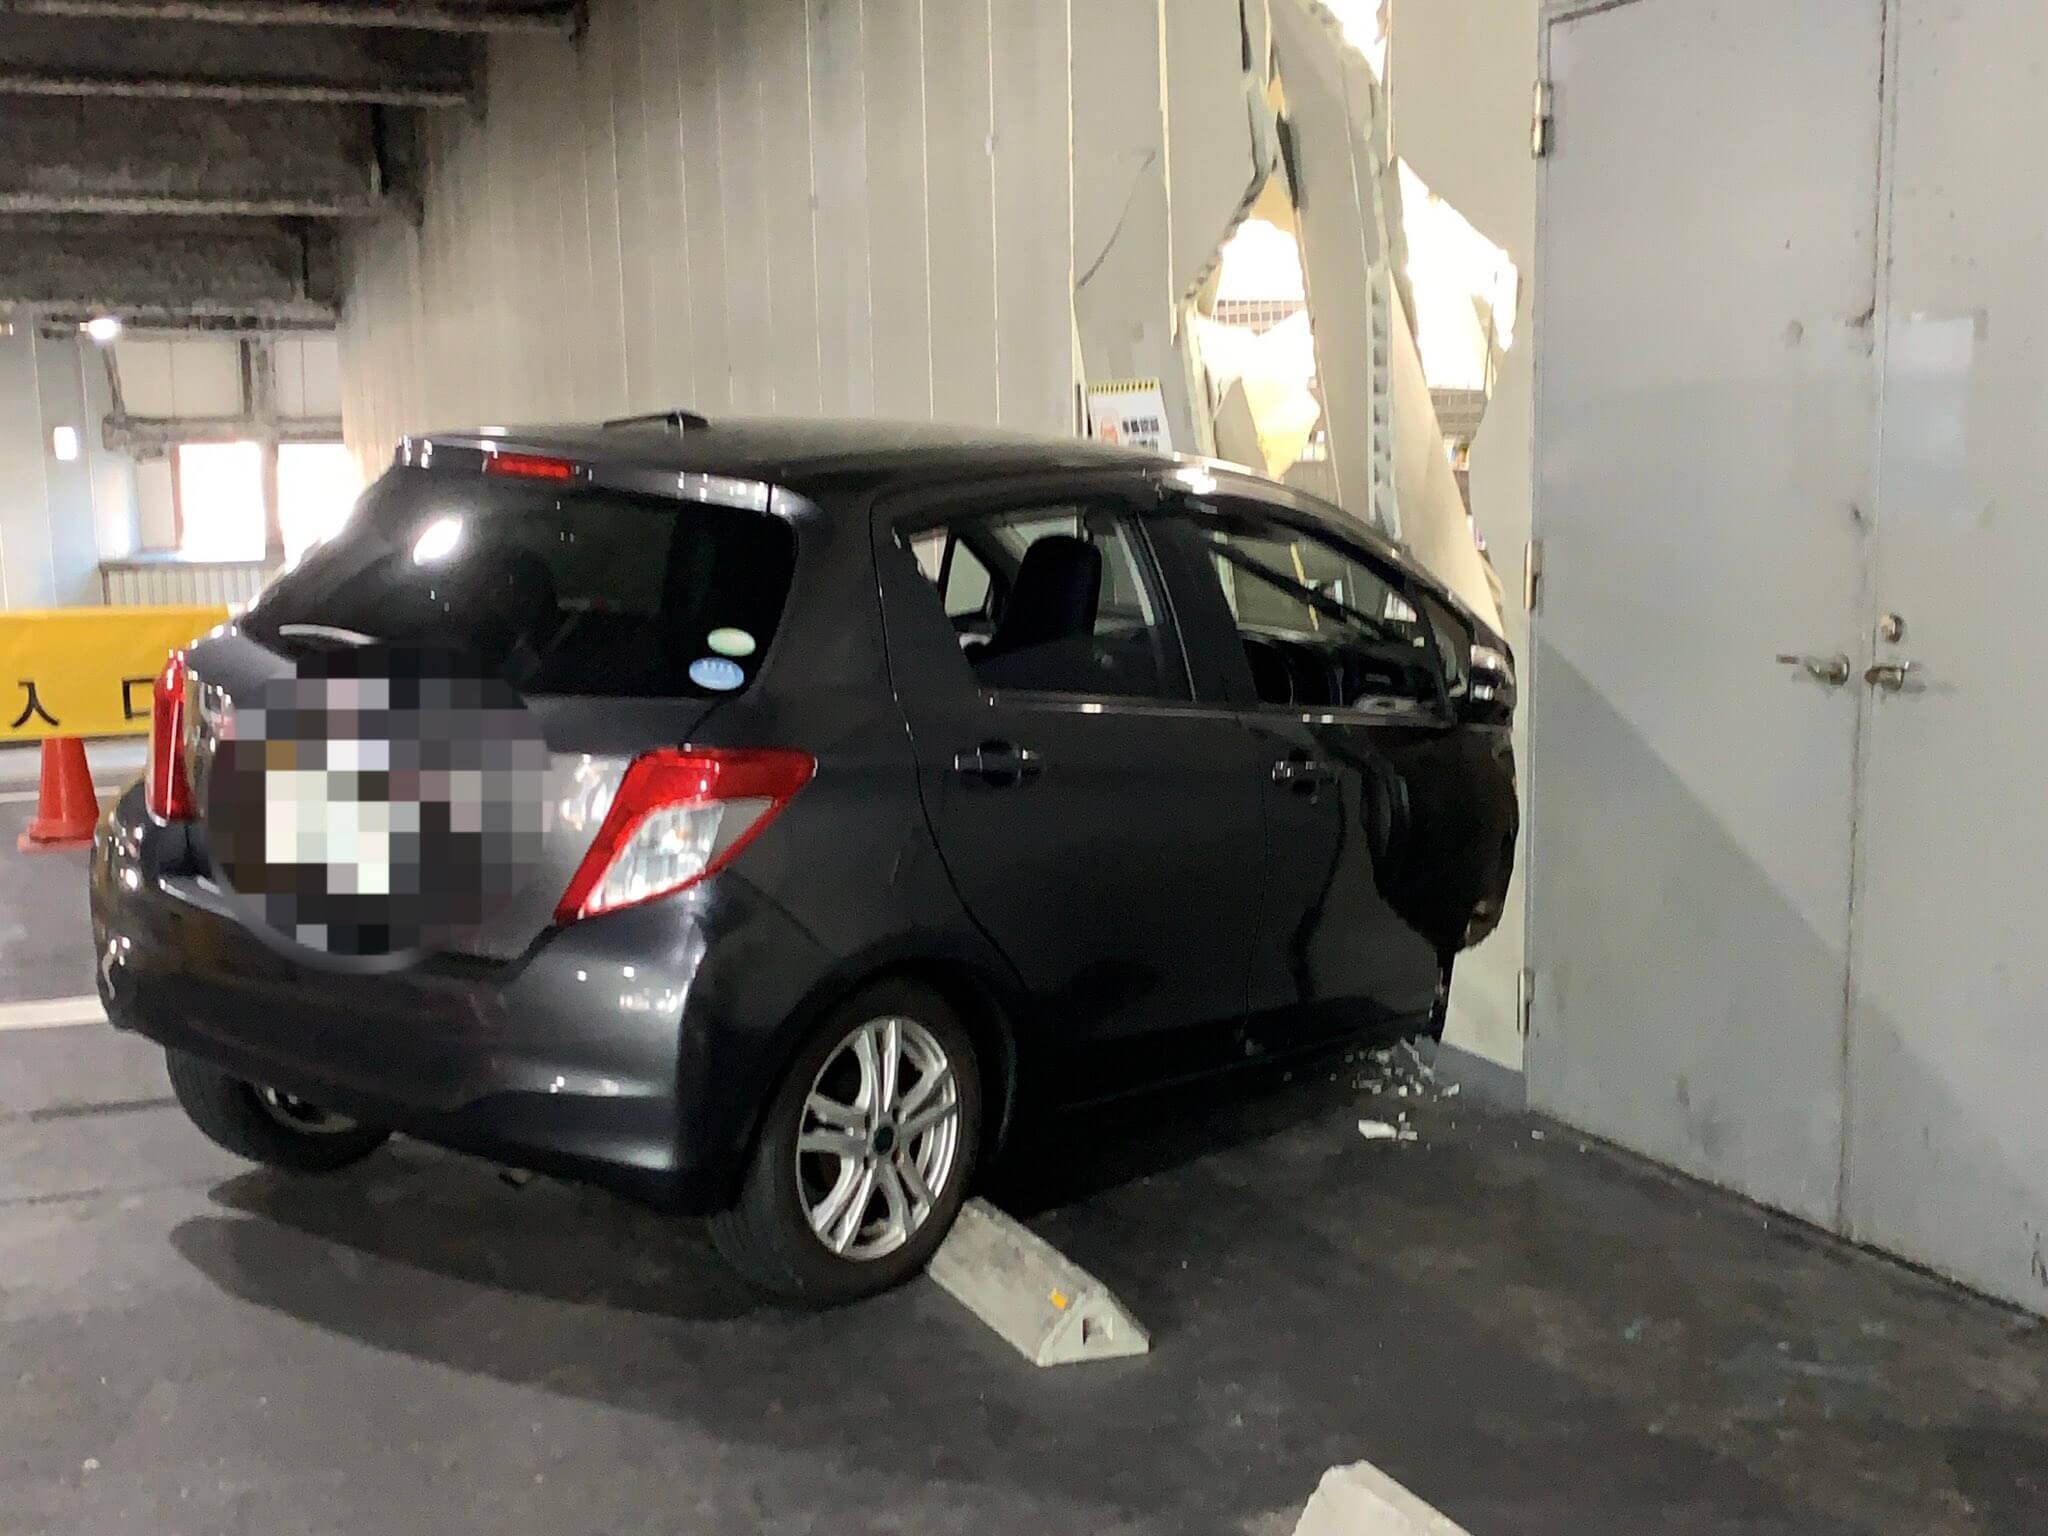 大阪 パチンコ店の駐車場で車がノーブレーキで壁に突っ込む フリーダム天六 スロカク パチスロデータ ニュースまとめブログ